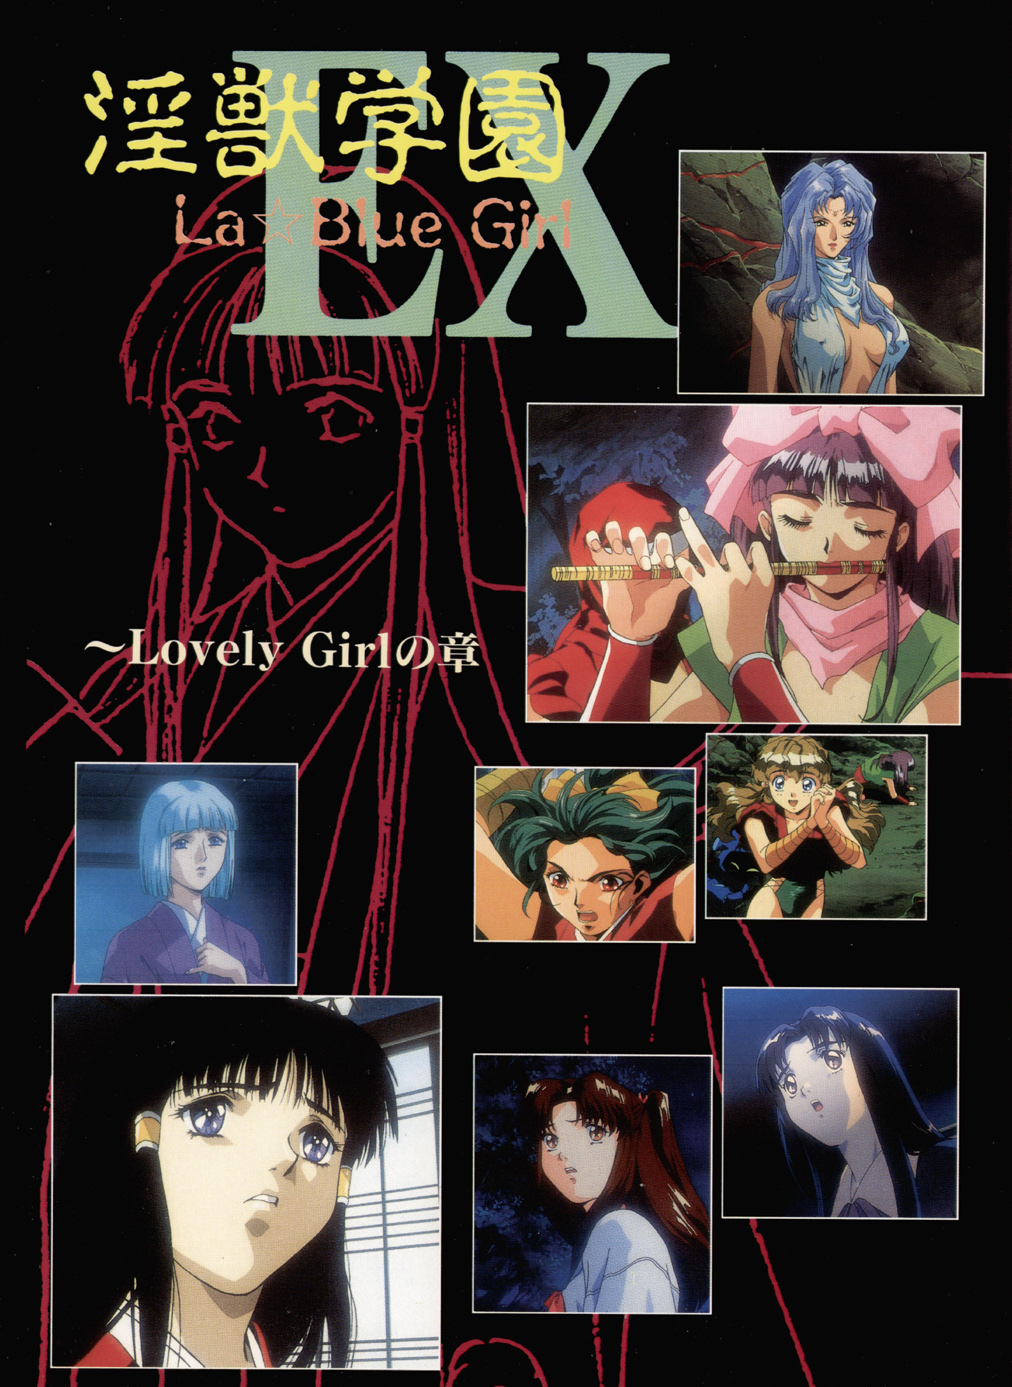 La Blue Girl Artbook 